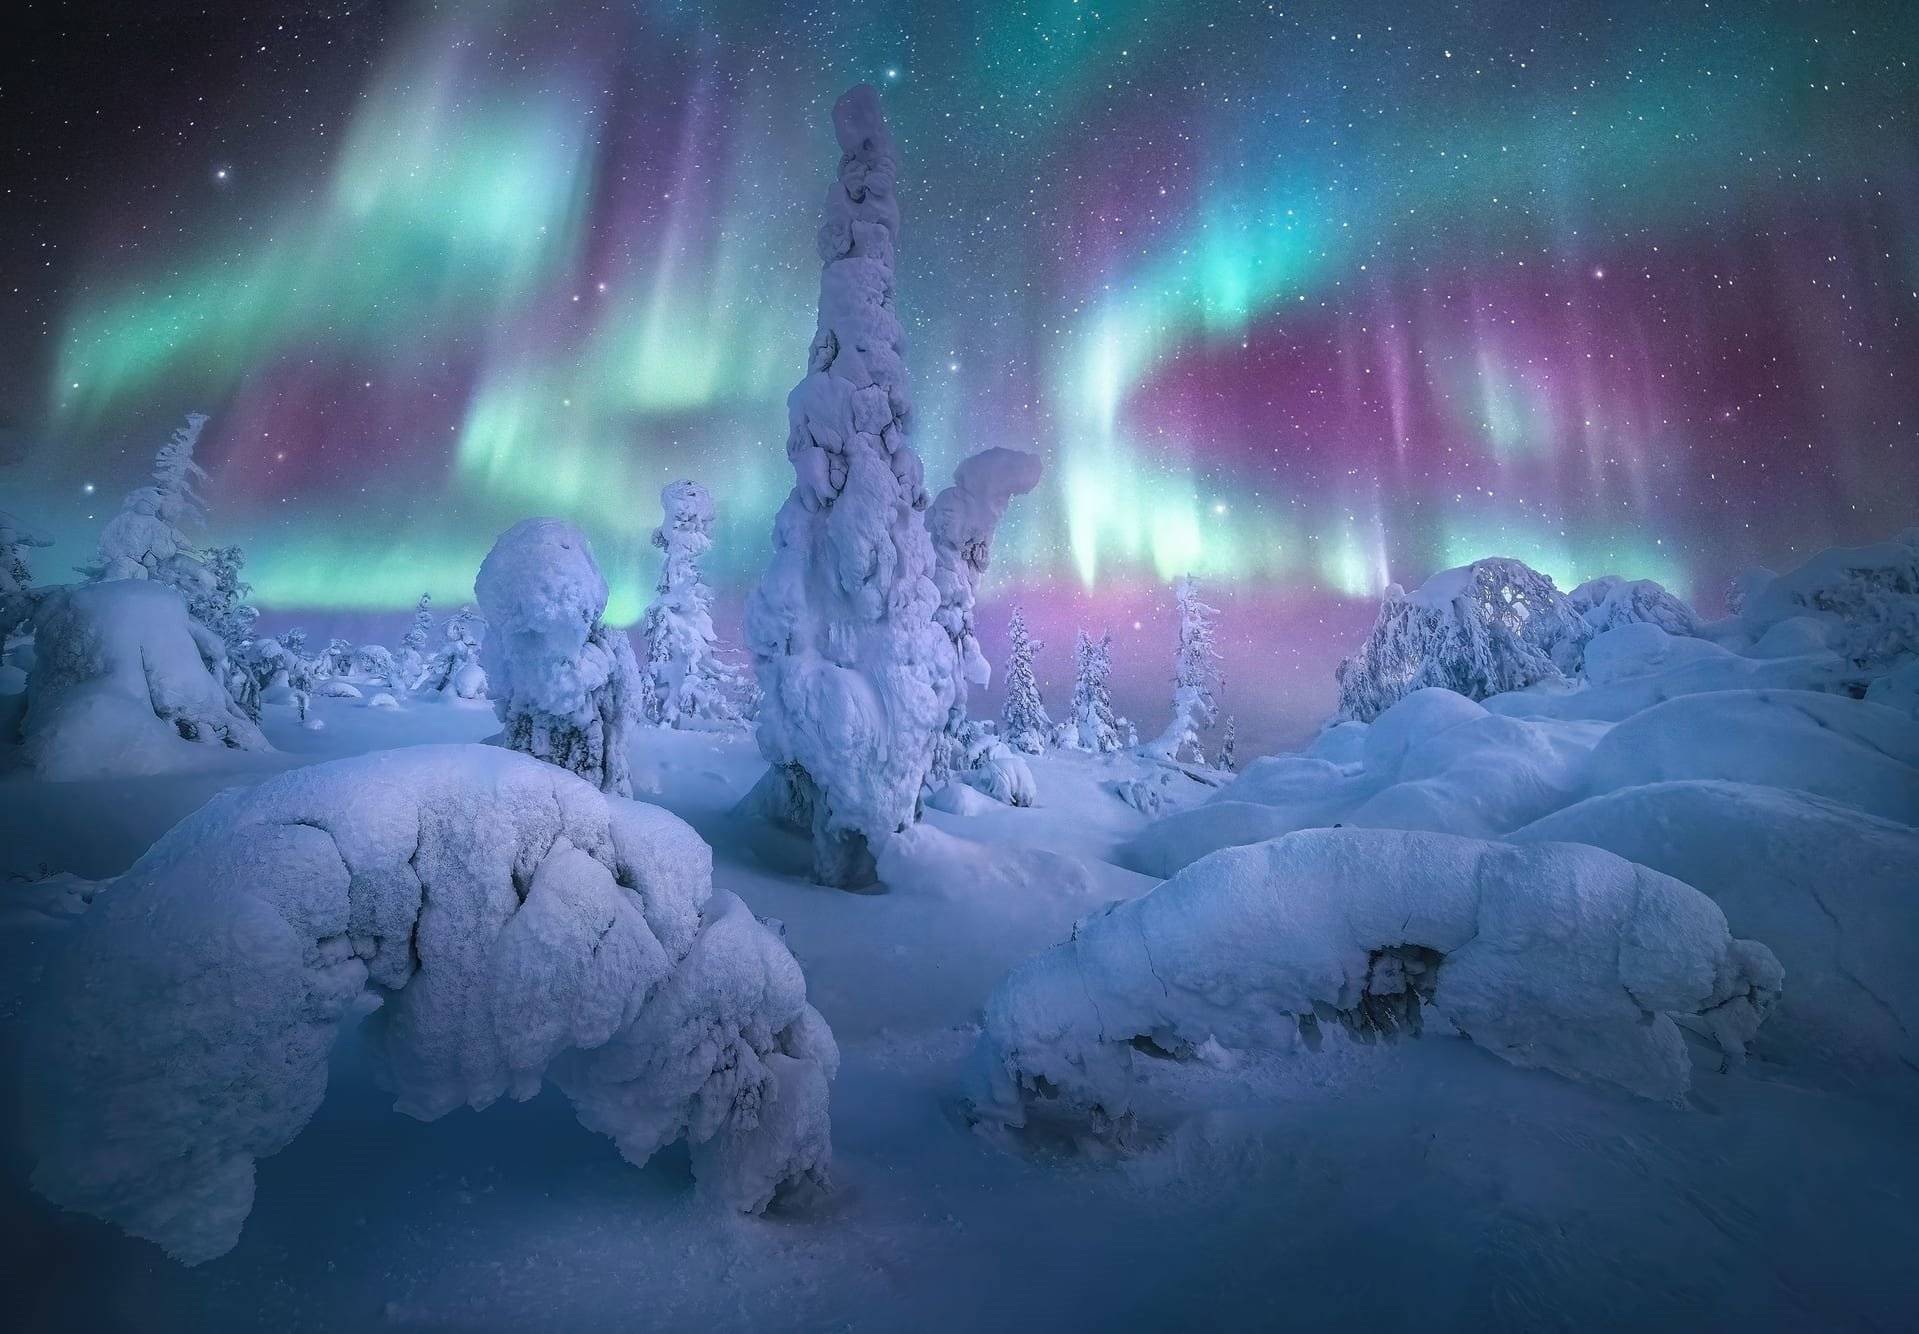 Las auroras boreales, también conocidas como luces del norte, son un fenómeno natural en el que el cielo nocturno se ilumina con un espectáculo de luces de colores. Estas luces son causadas por partículas cargadas que son expulsadas del sol y chocan con la atmósfera terrestre en las regiones polares.